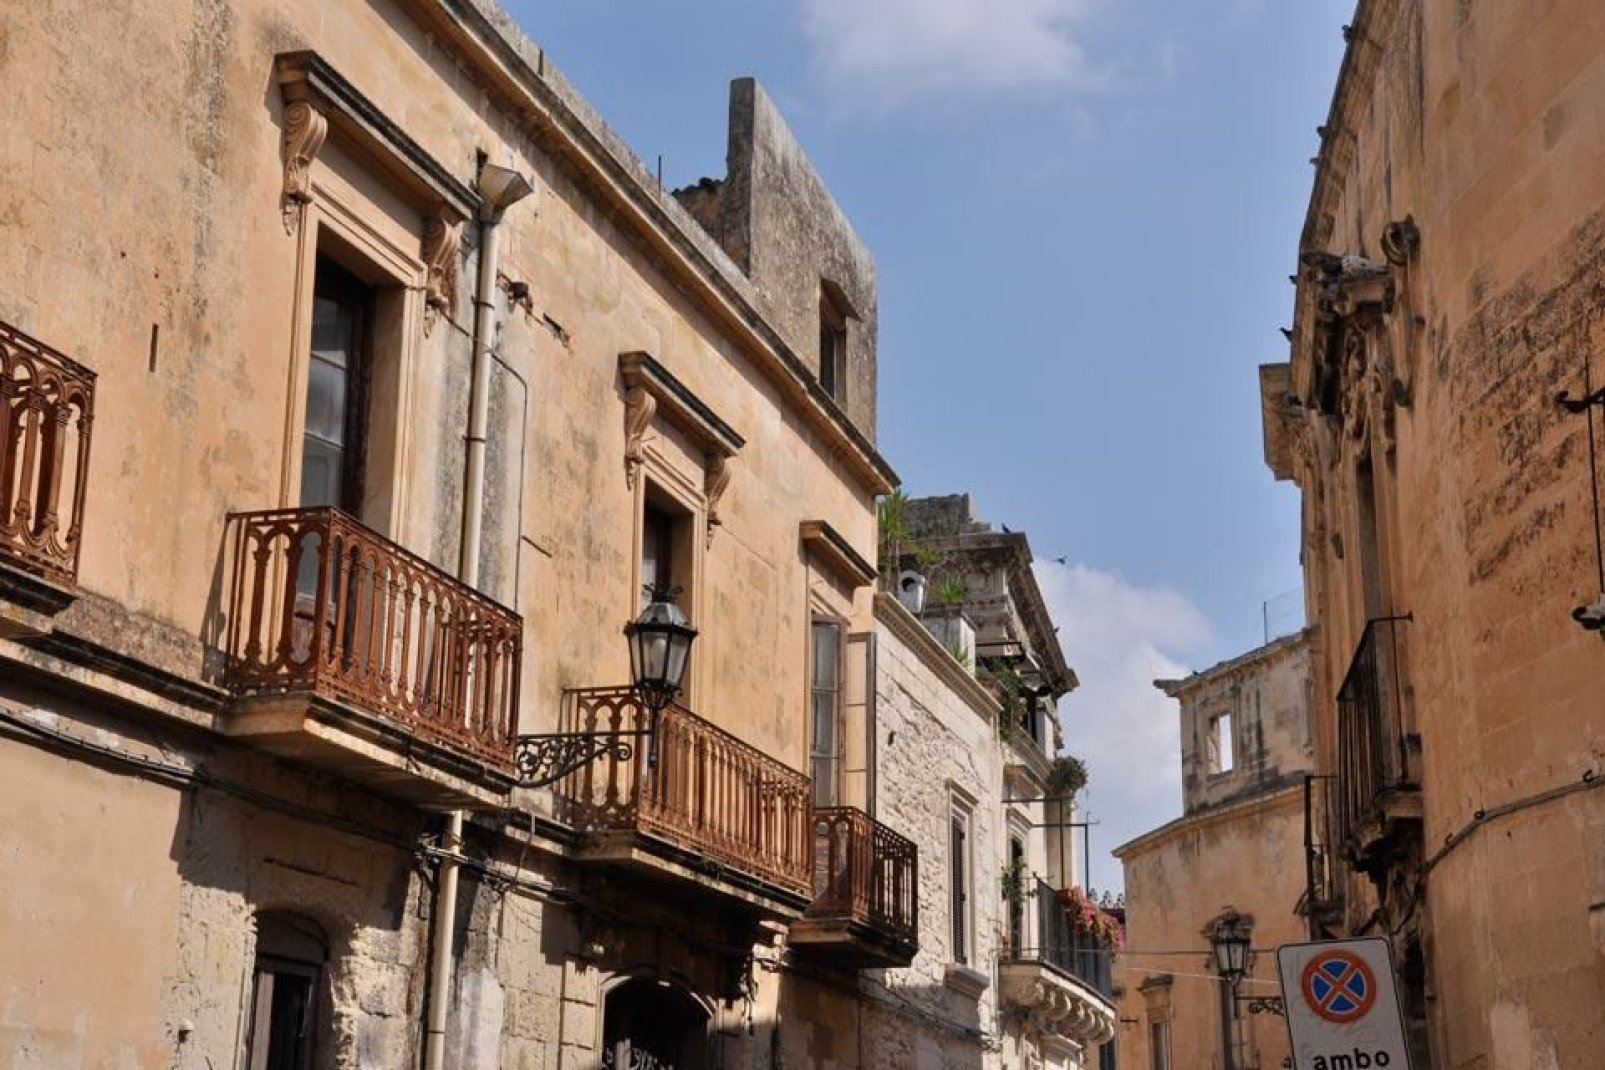 La mayoría de edificios de la ciudad están construidos con la llamada piedra de Lecce, caliza y de tonos cálidos.